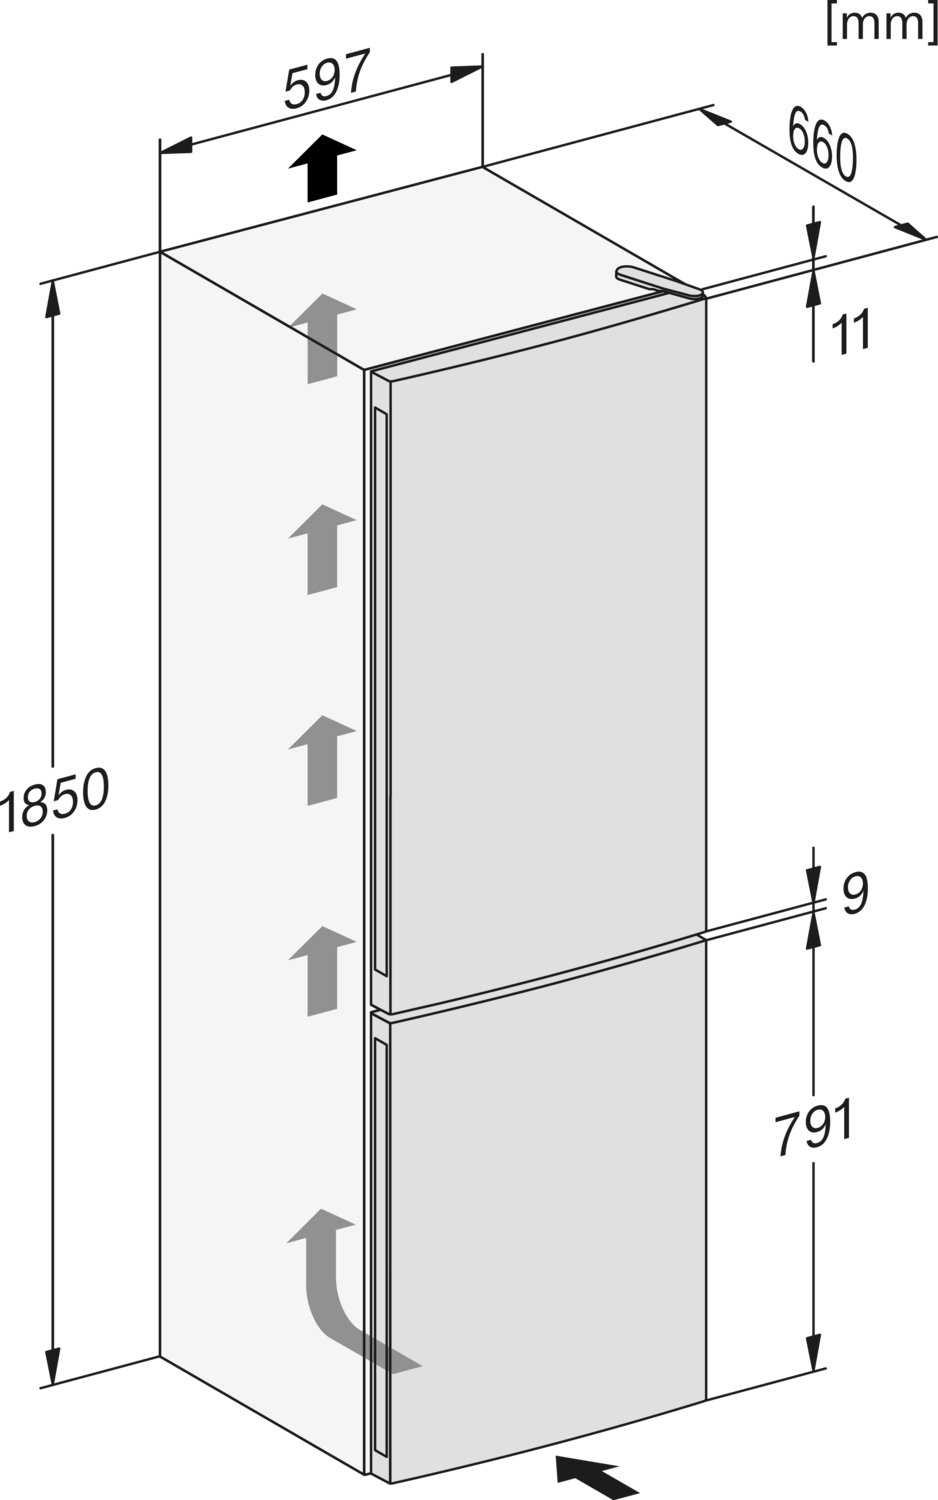 Baltas šaldytuvas su šaldikliu ir NoFrost funkcija, aukštis 1.86m (KDN 4174 E) product photo View4 ZOOM